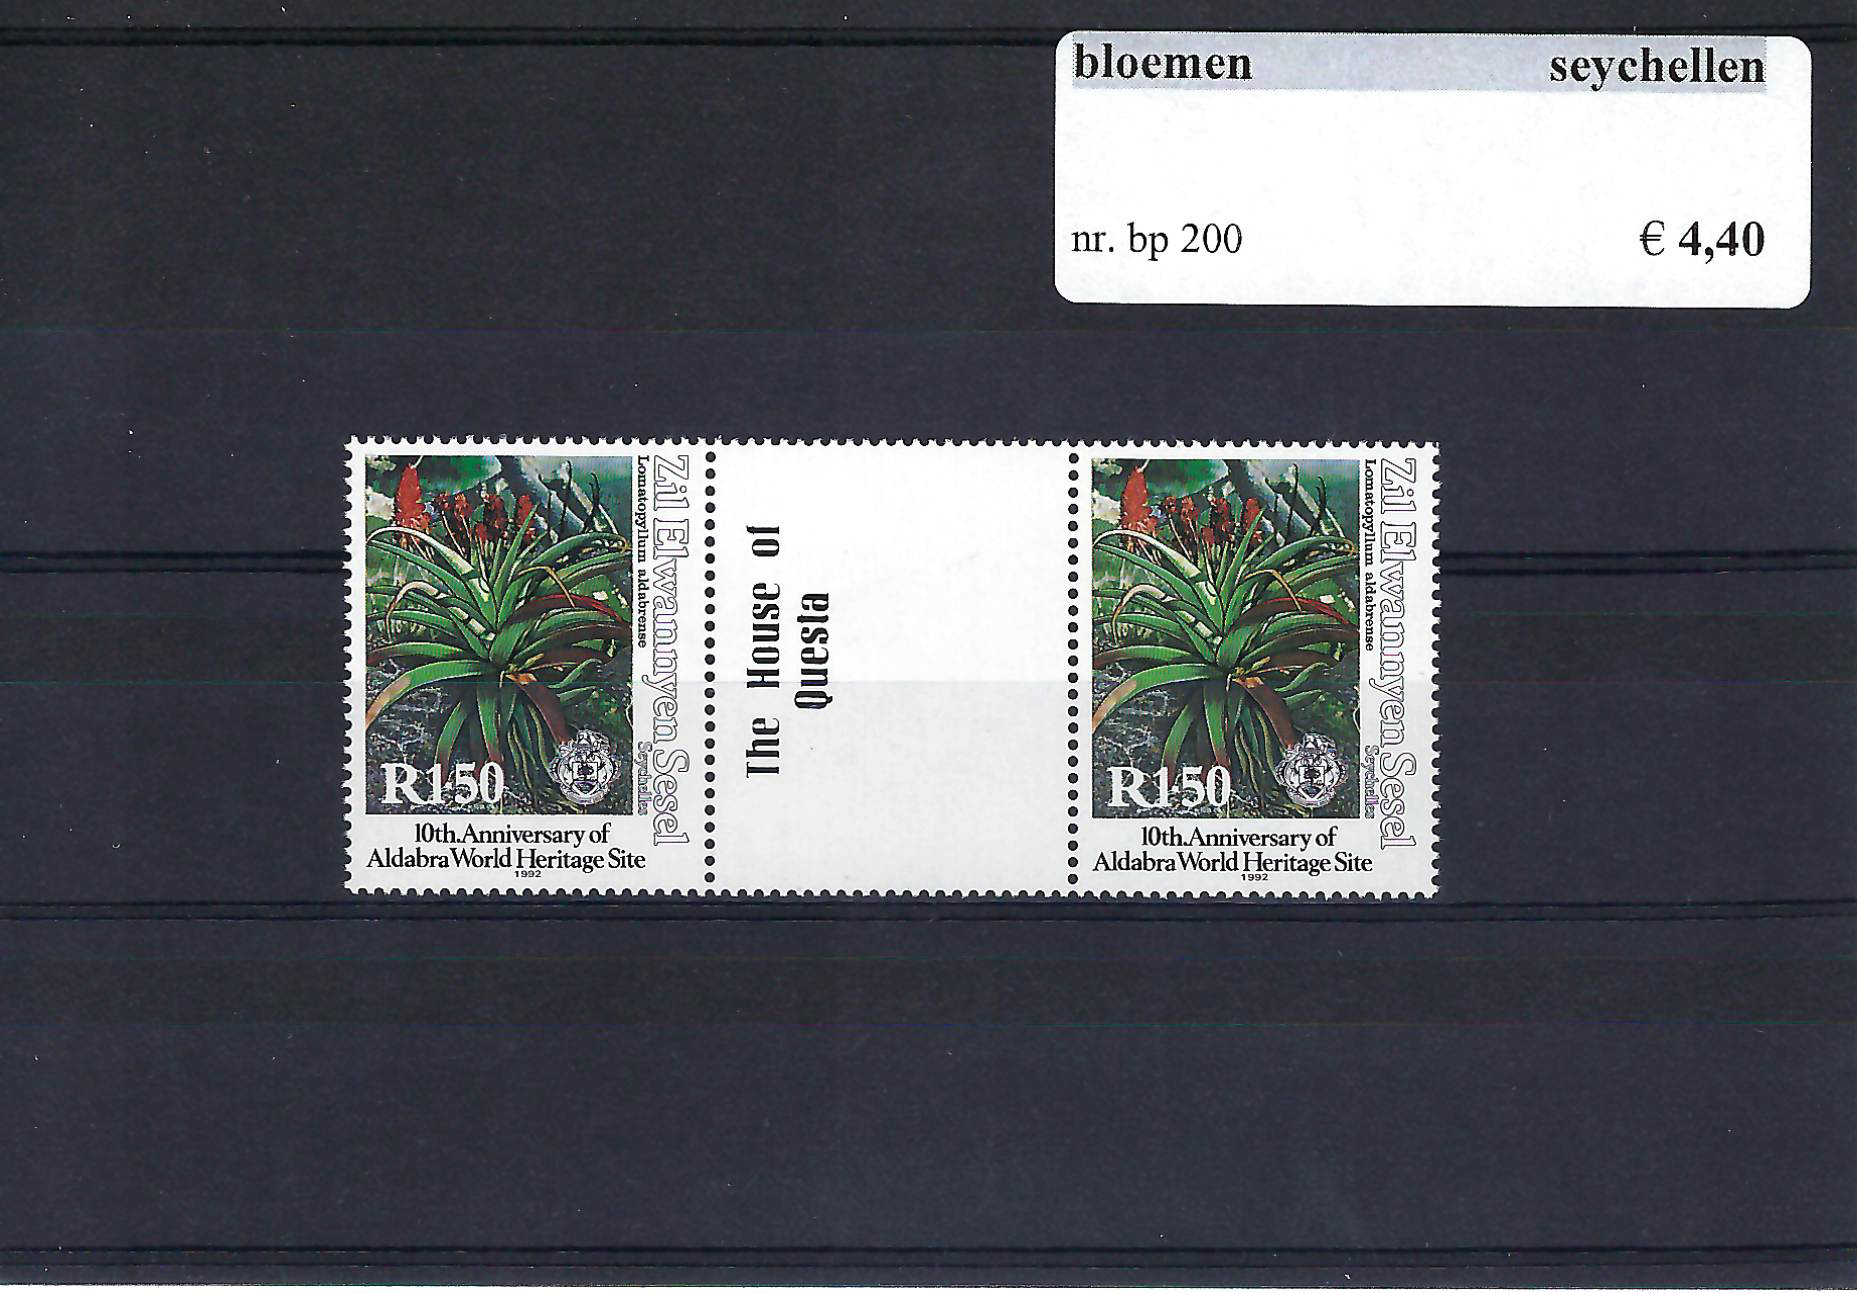 Themazegels Bloemen Seychellen nr. bp. 200